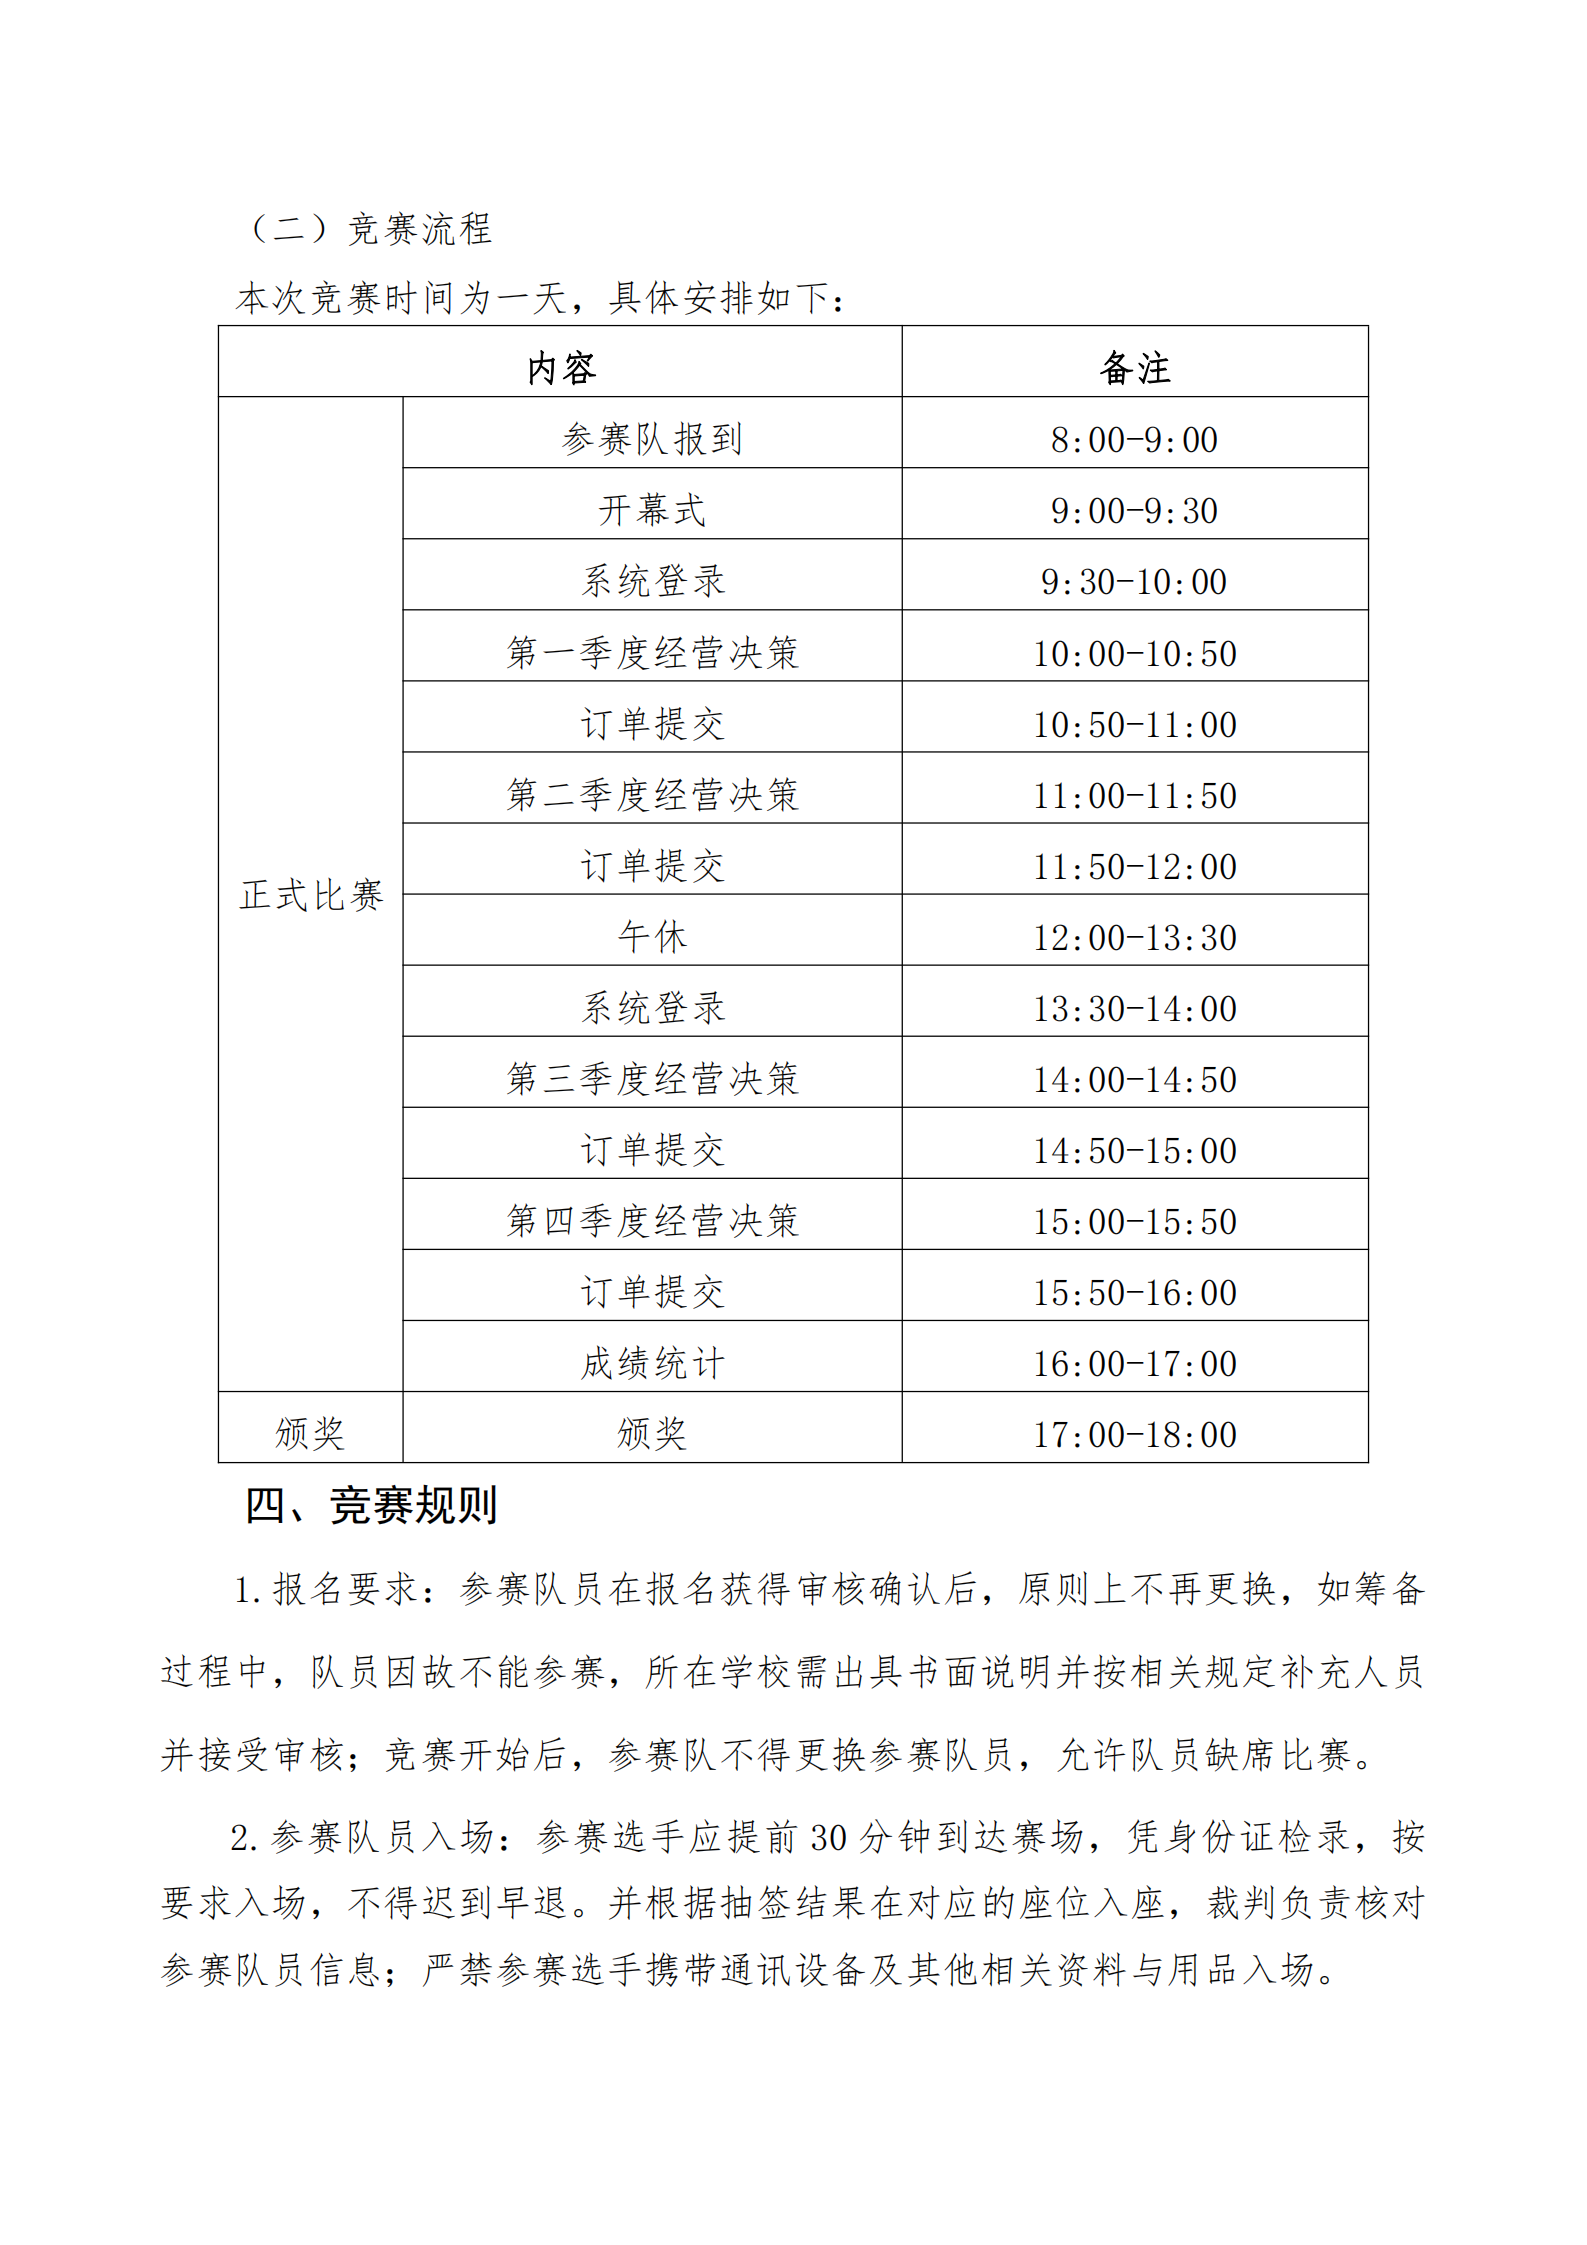 关于举办 2021 年武汉市中等职业学校创新创业技能大赛的通知(图6)